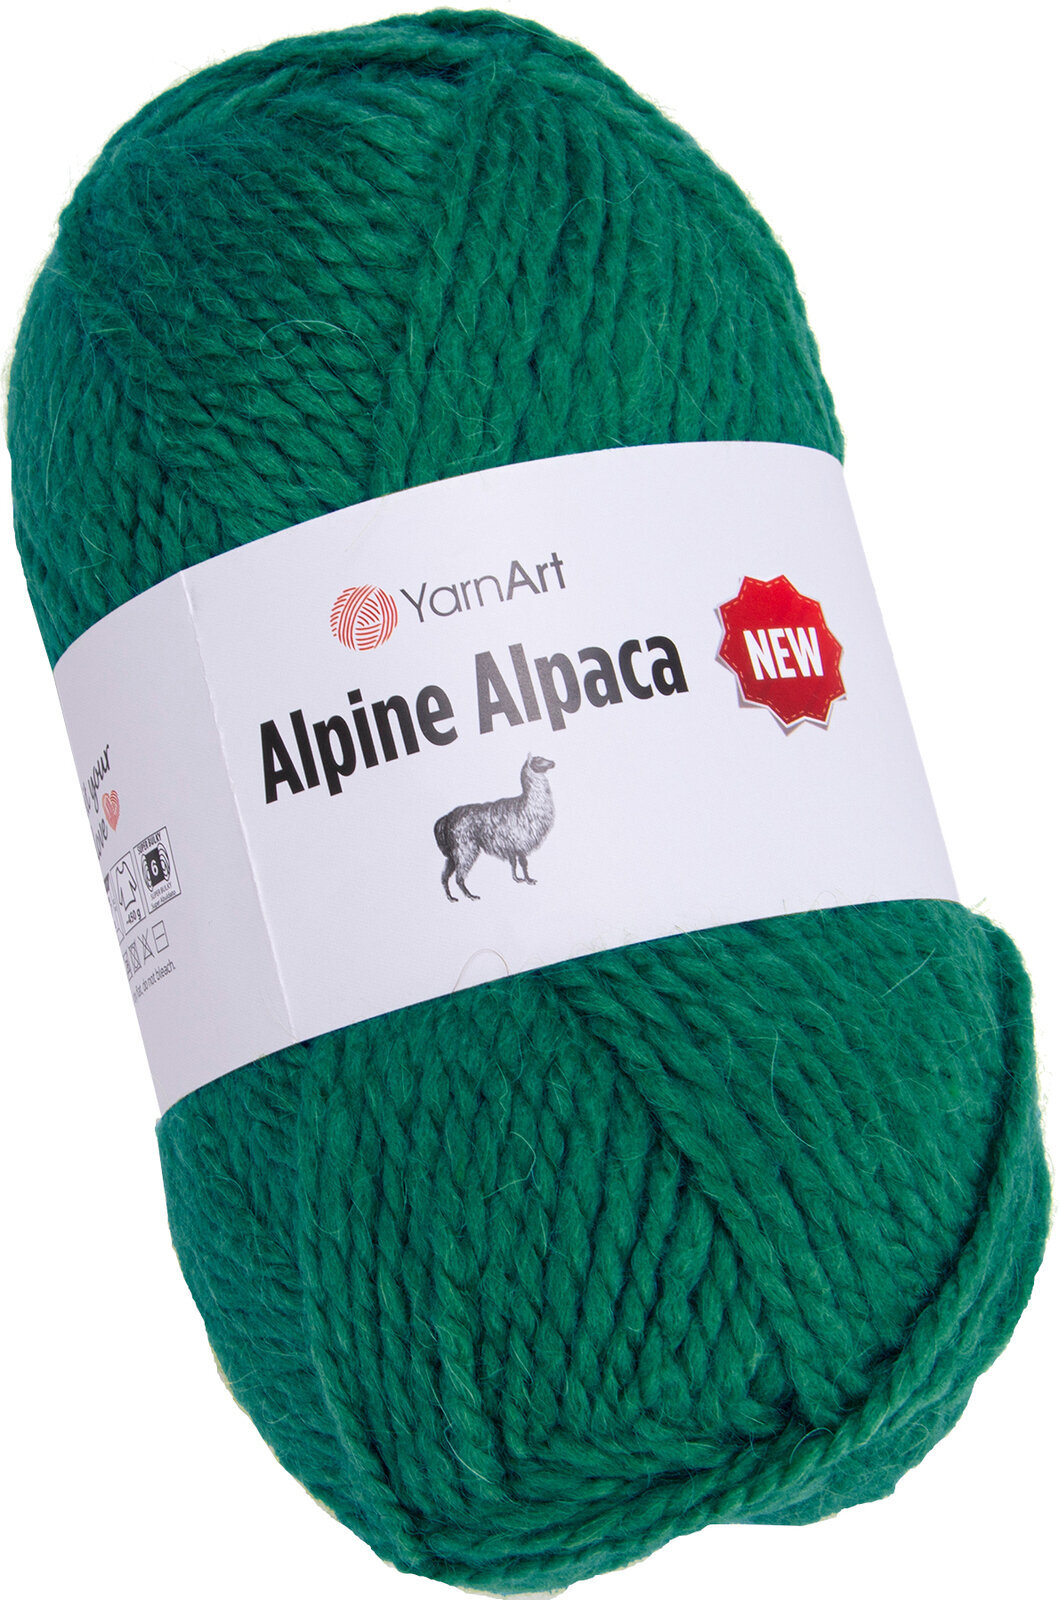 Filati per maglieria Yarn Art Alpine Alpaca New 1449 Filati per maglieria